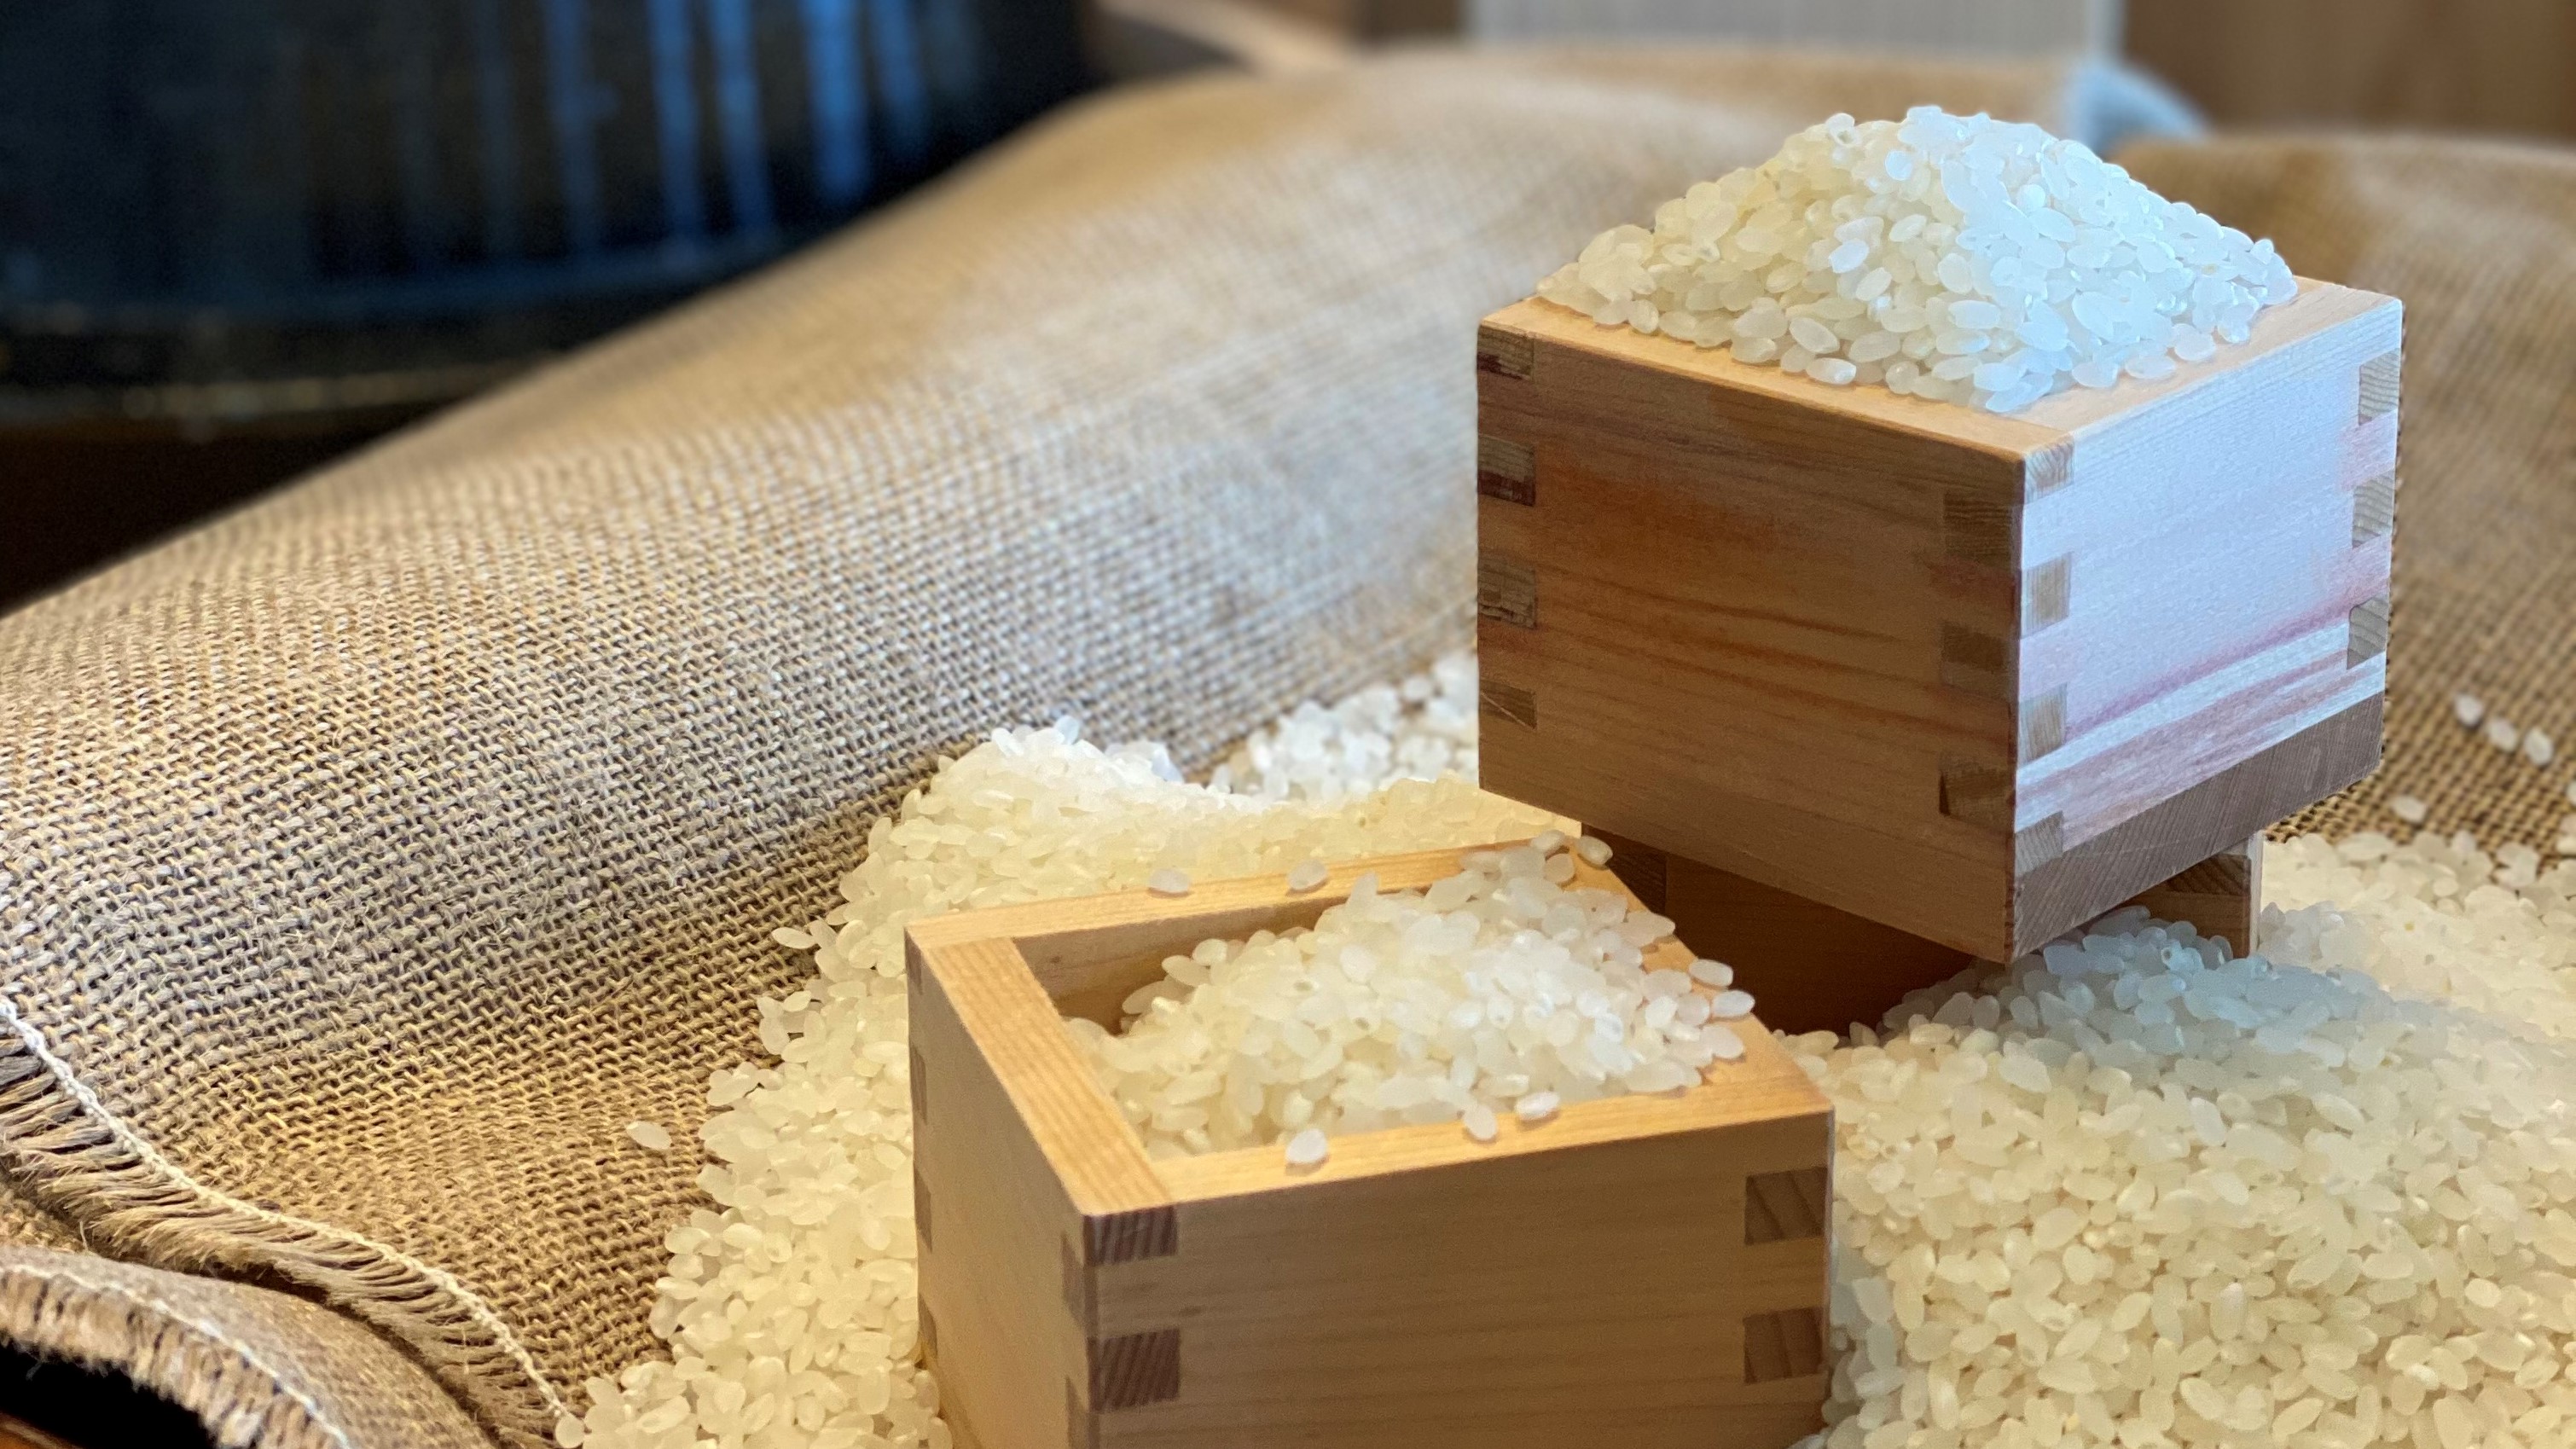 【朝食一例】お米は鹿児島県産ひのひかり。羽釜炊きでご用意いたします。